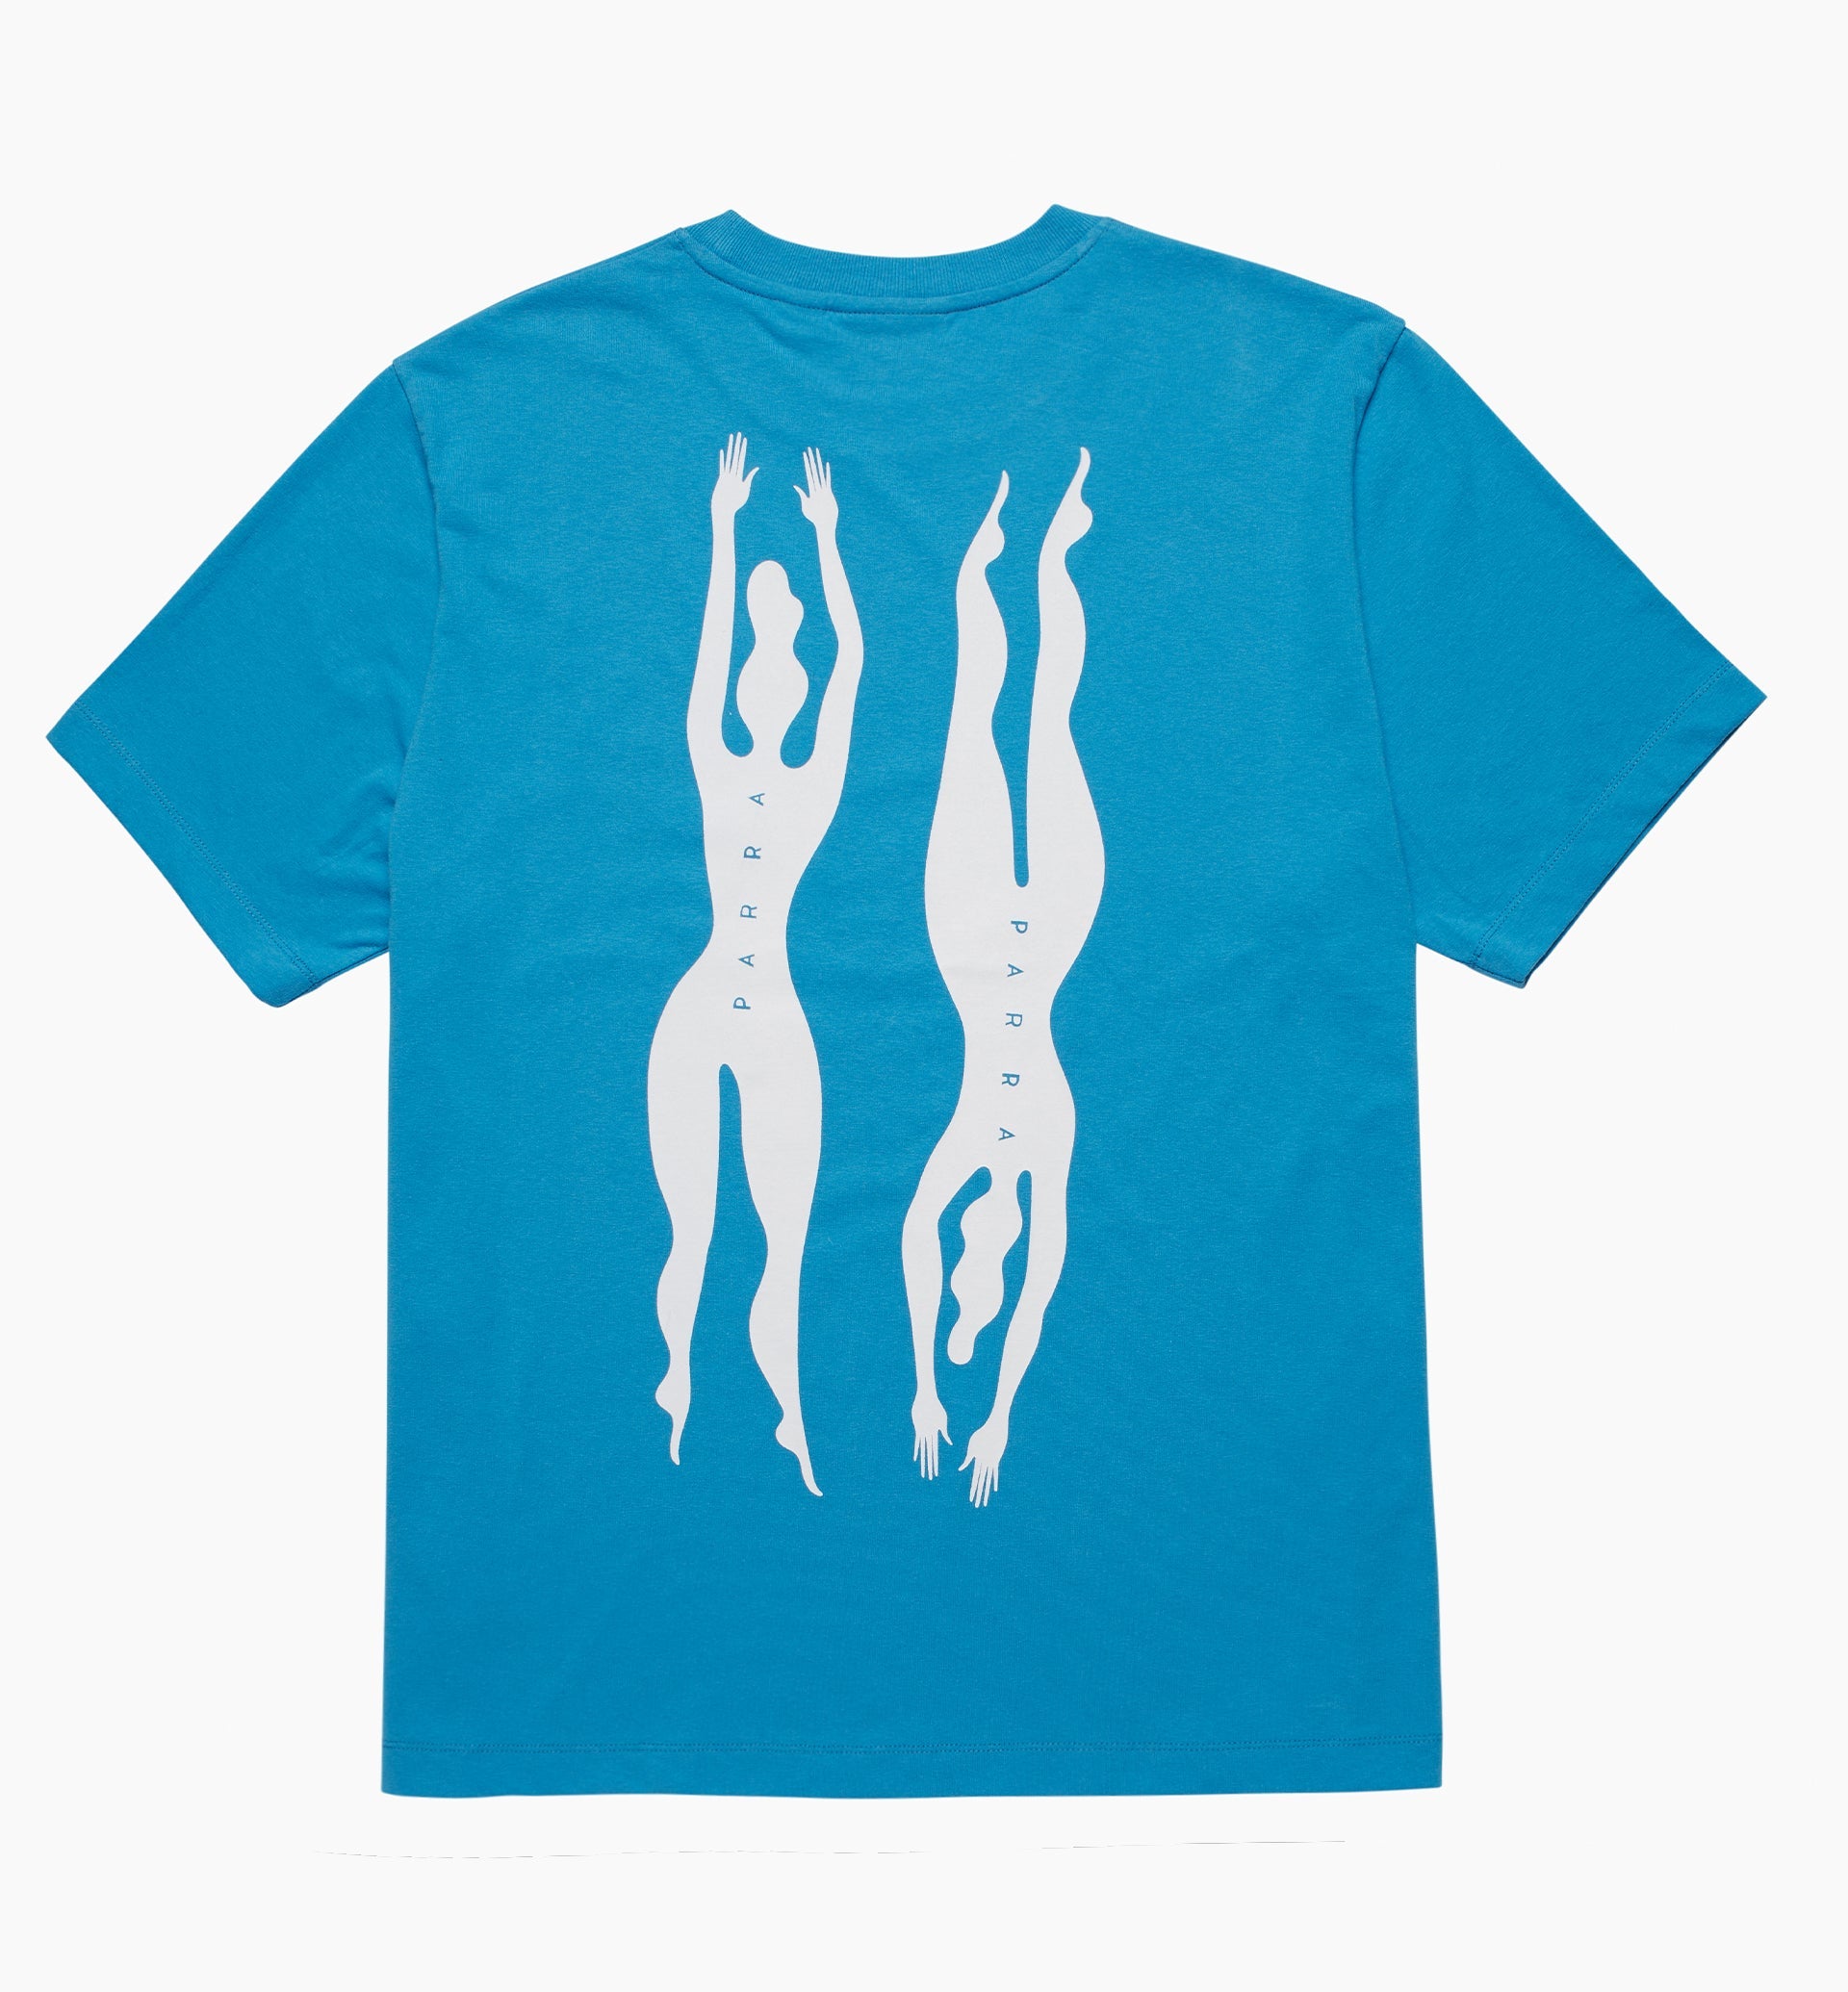 Parra - under water t-shirt